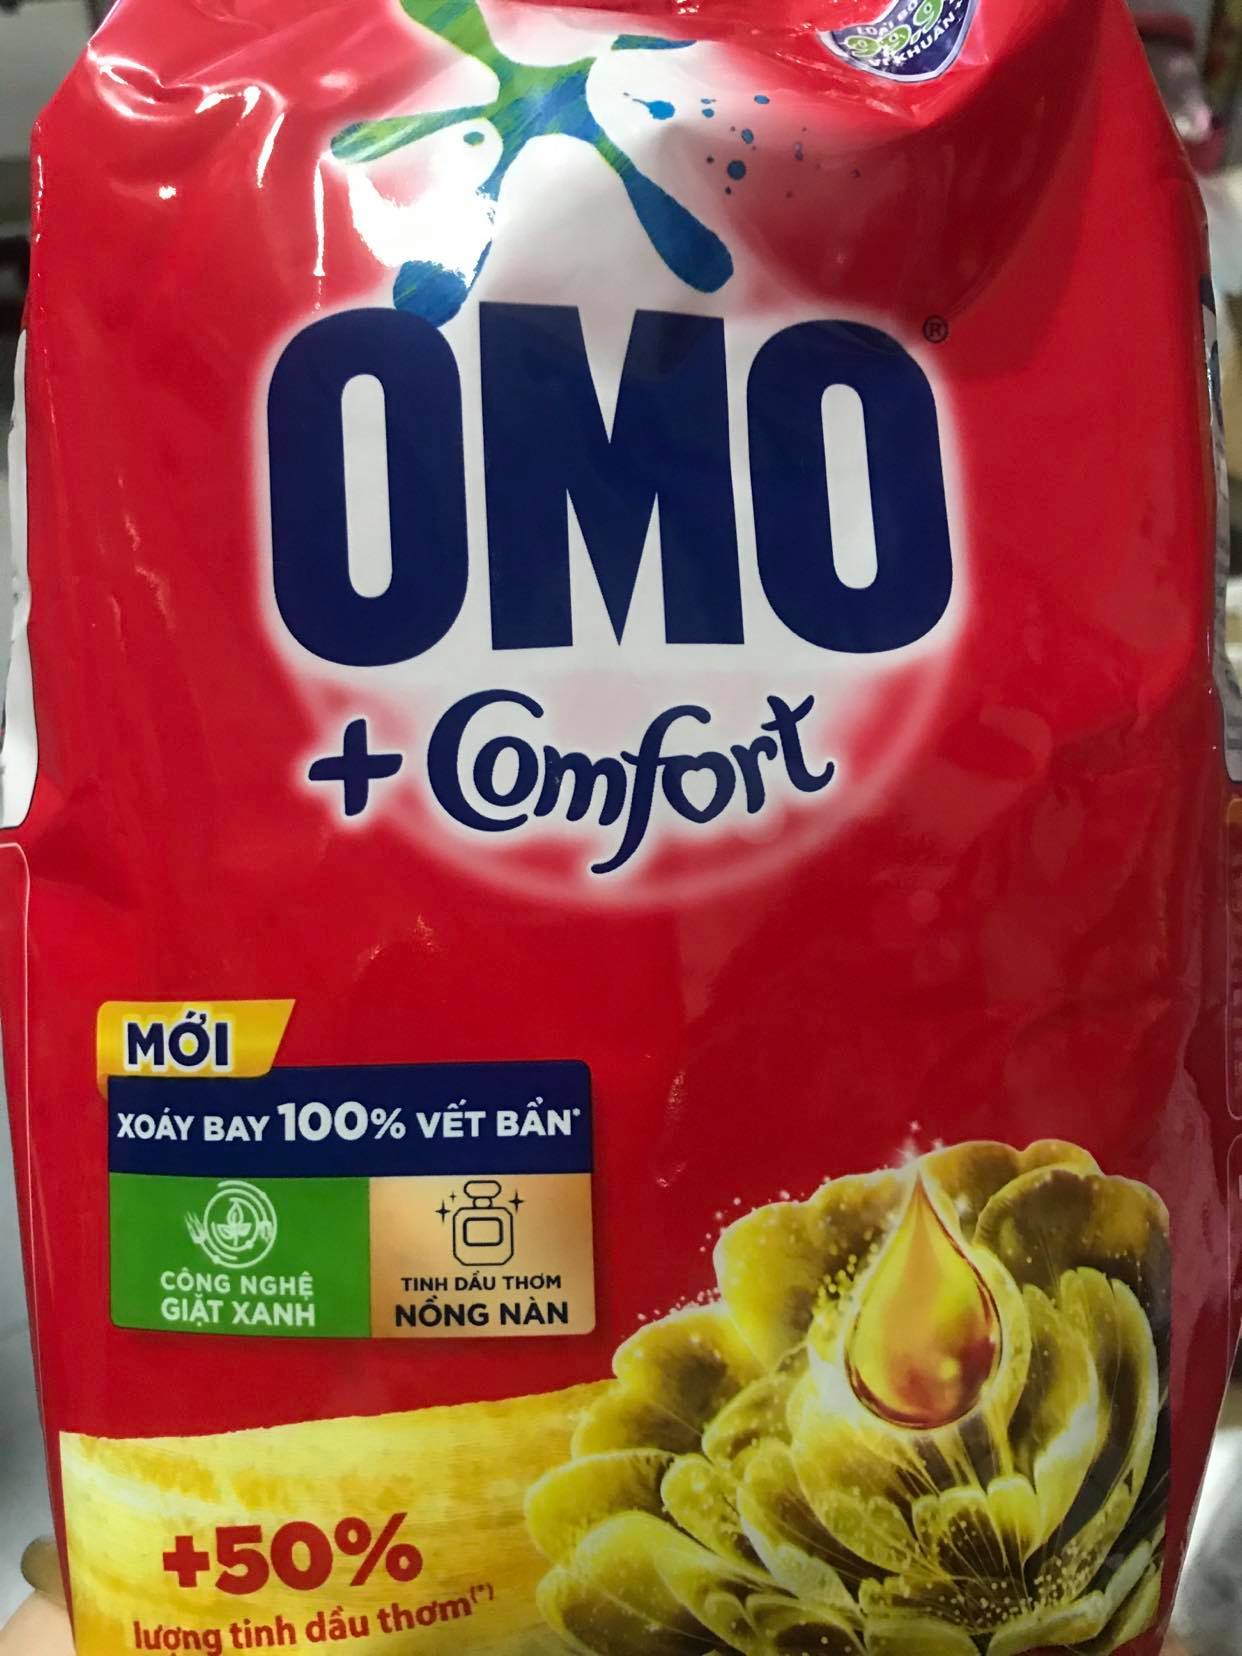 Bột Giặt OMO Comfort Tinh Dầu Thơm Nồng Nàn 700g, Bách hóa Minh Anh